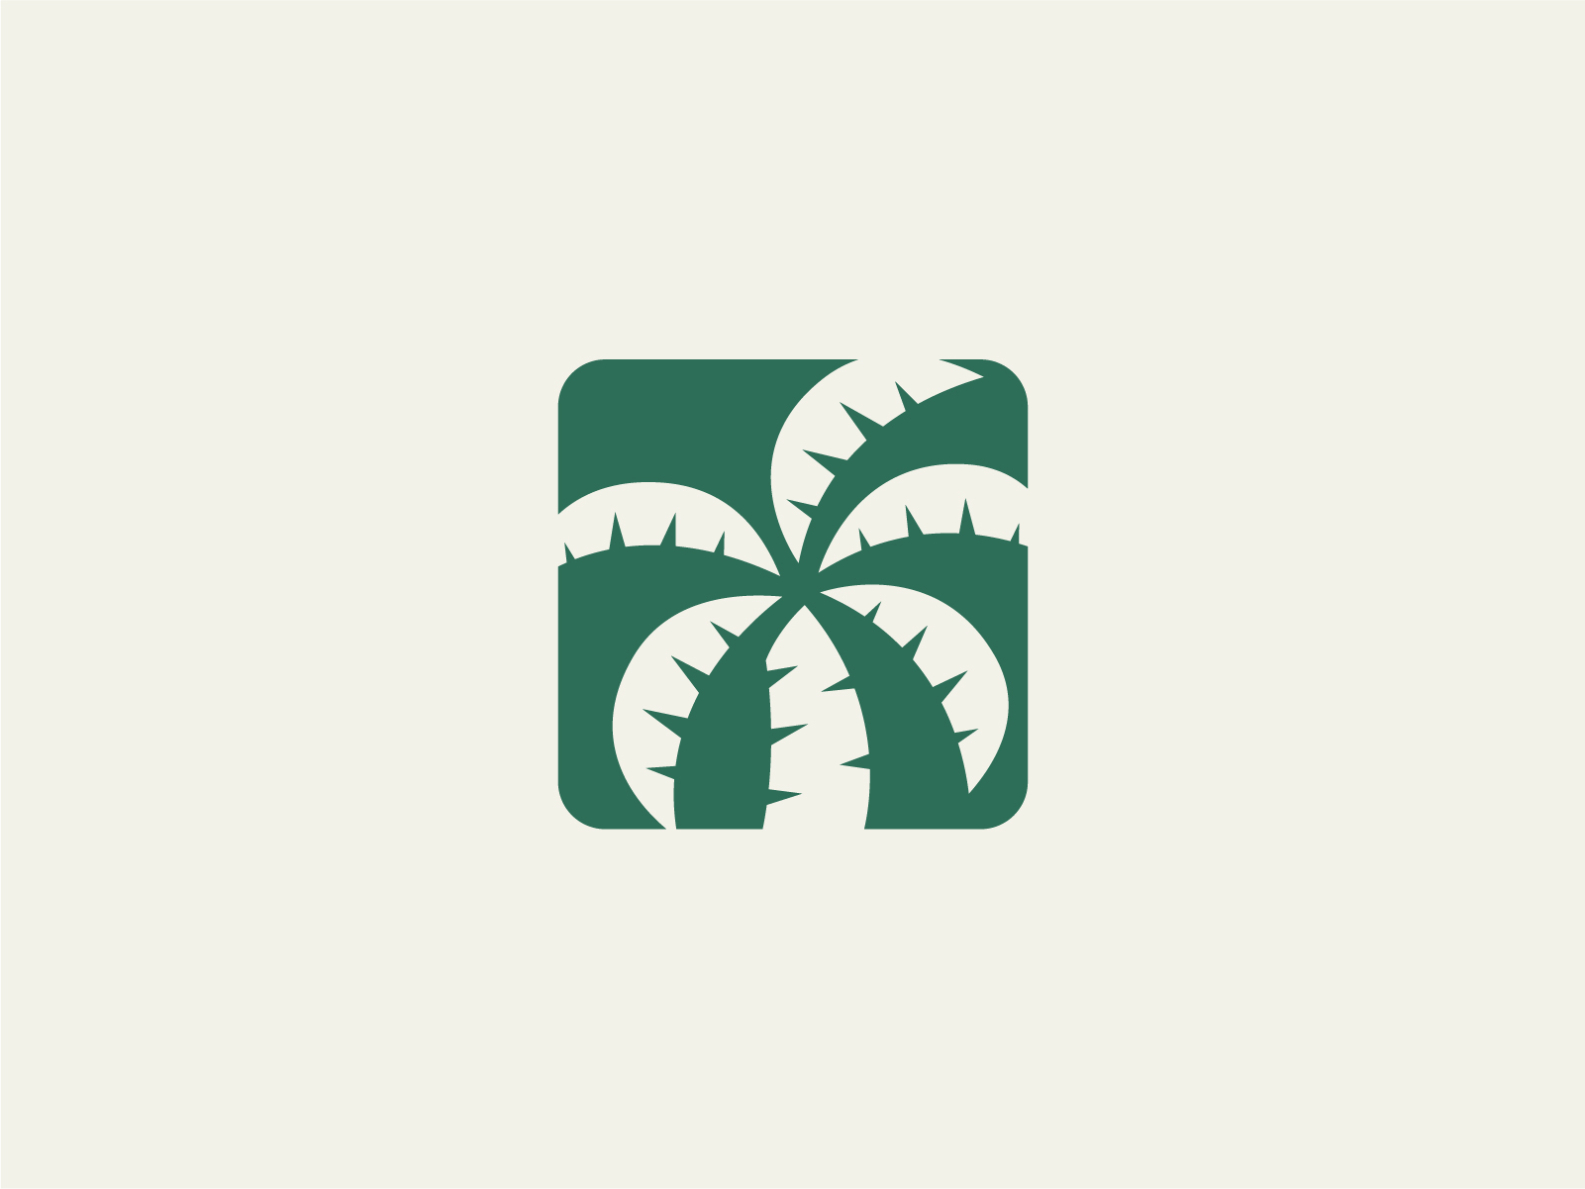 Palm Logo by Arsen Mnatsakanyan on Dribbble